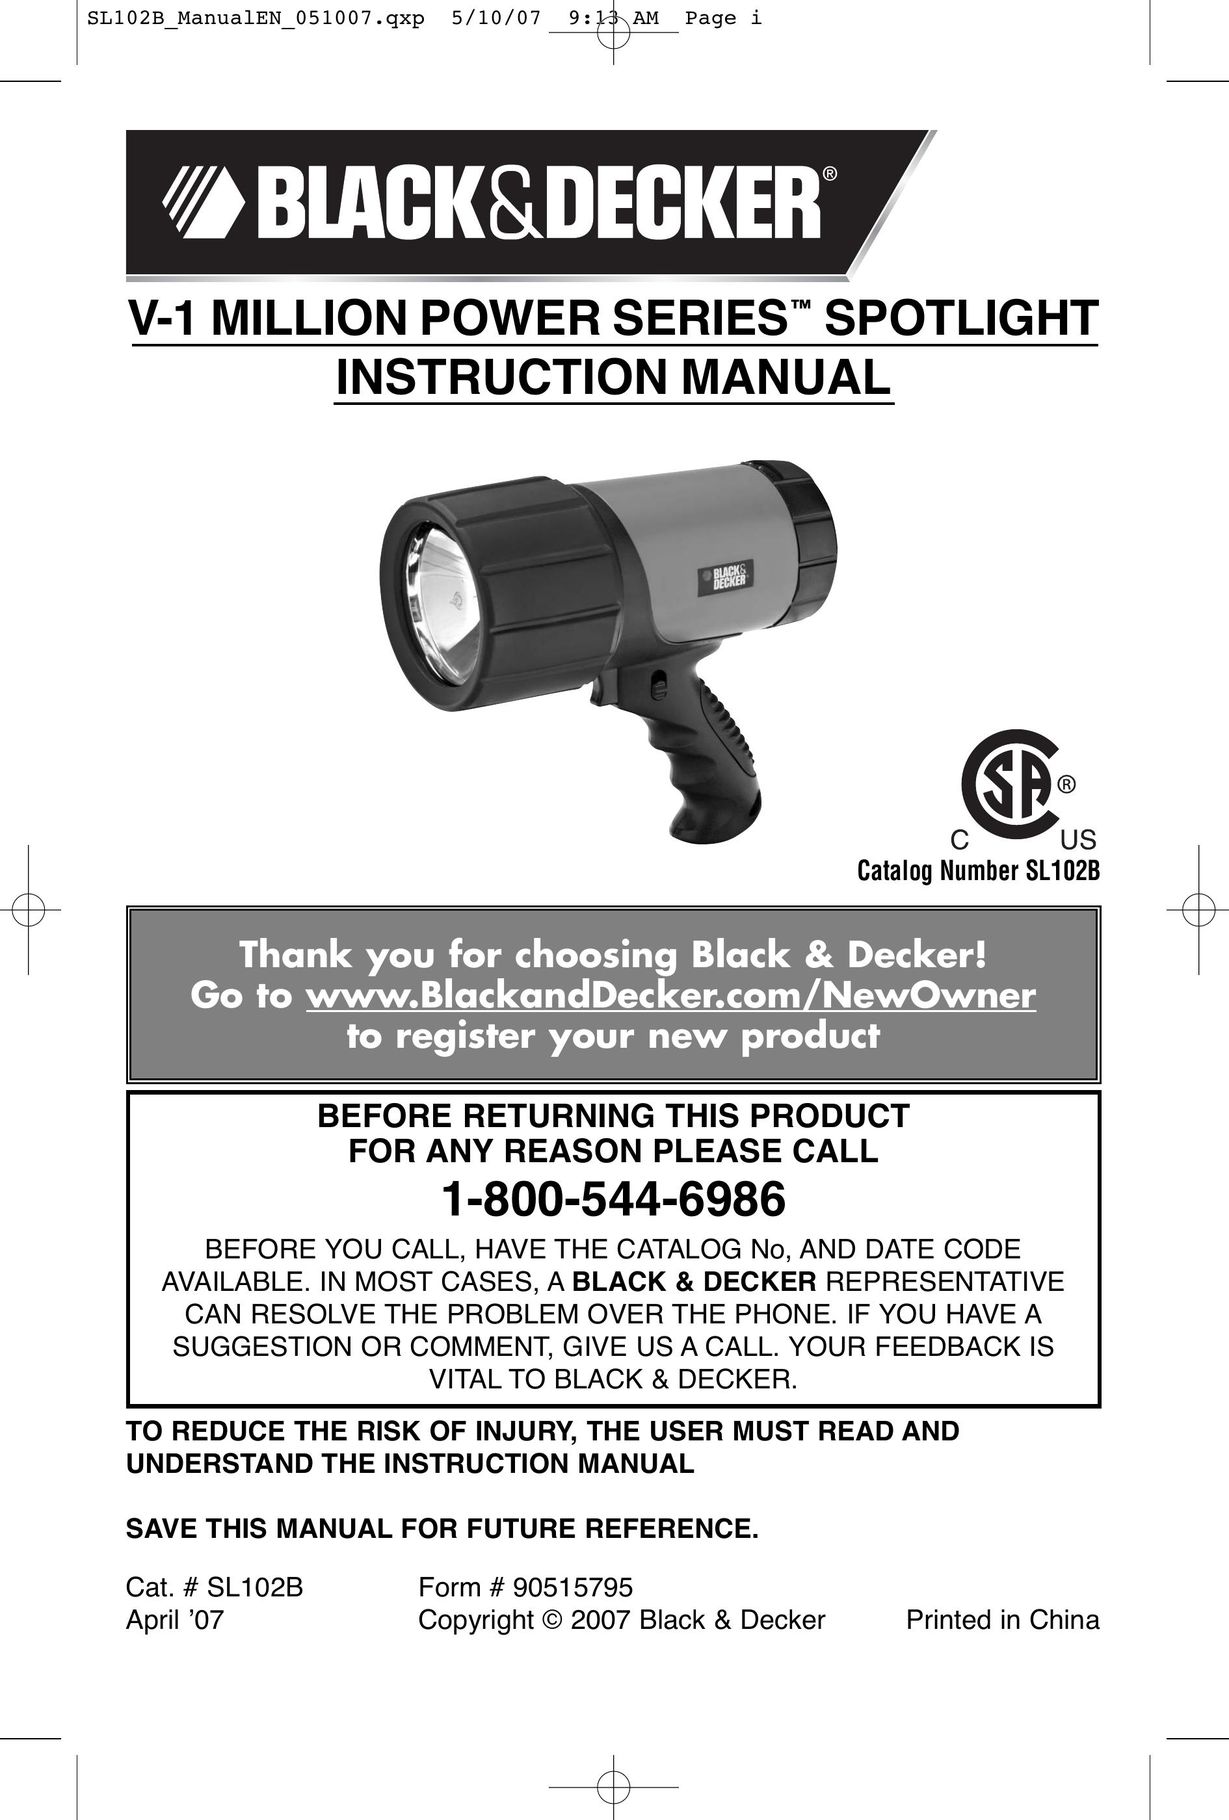 Black & Decker V-1 Million Work Light User Manual